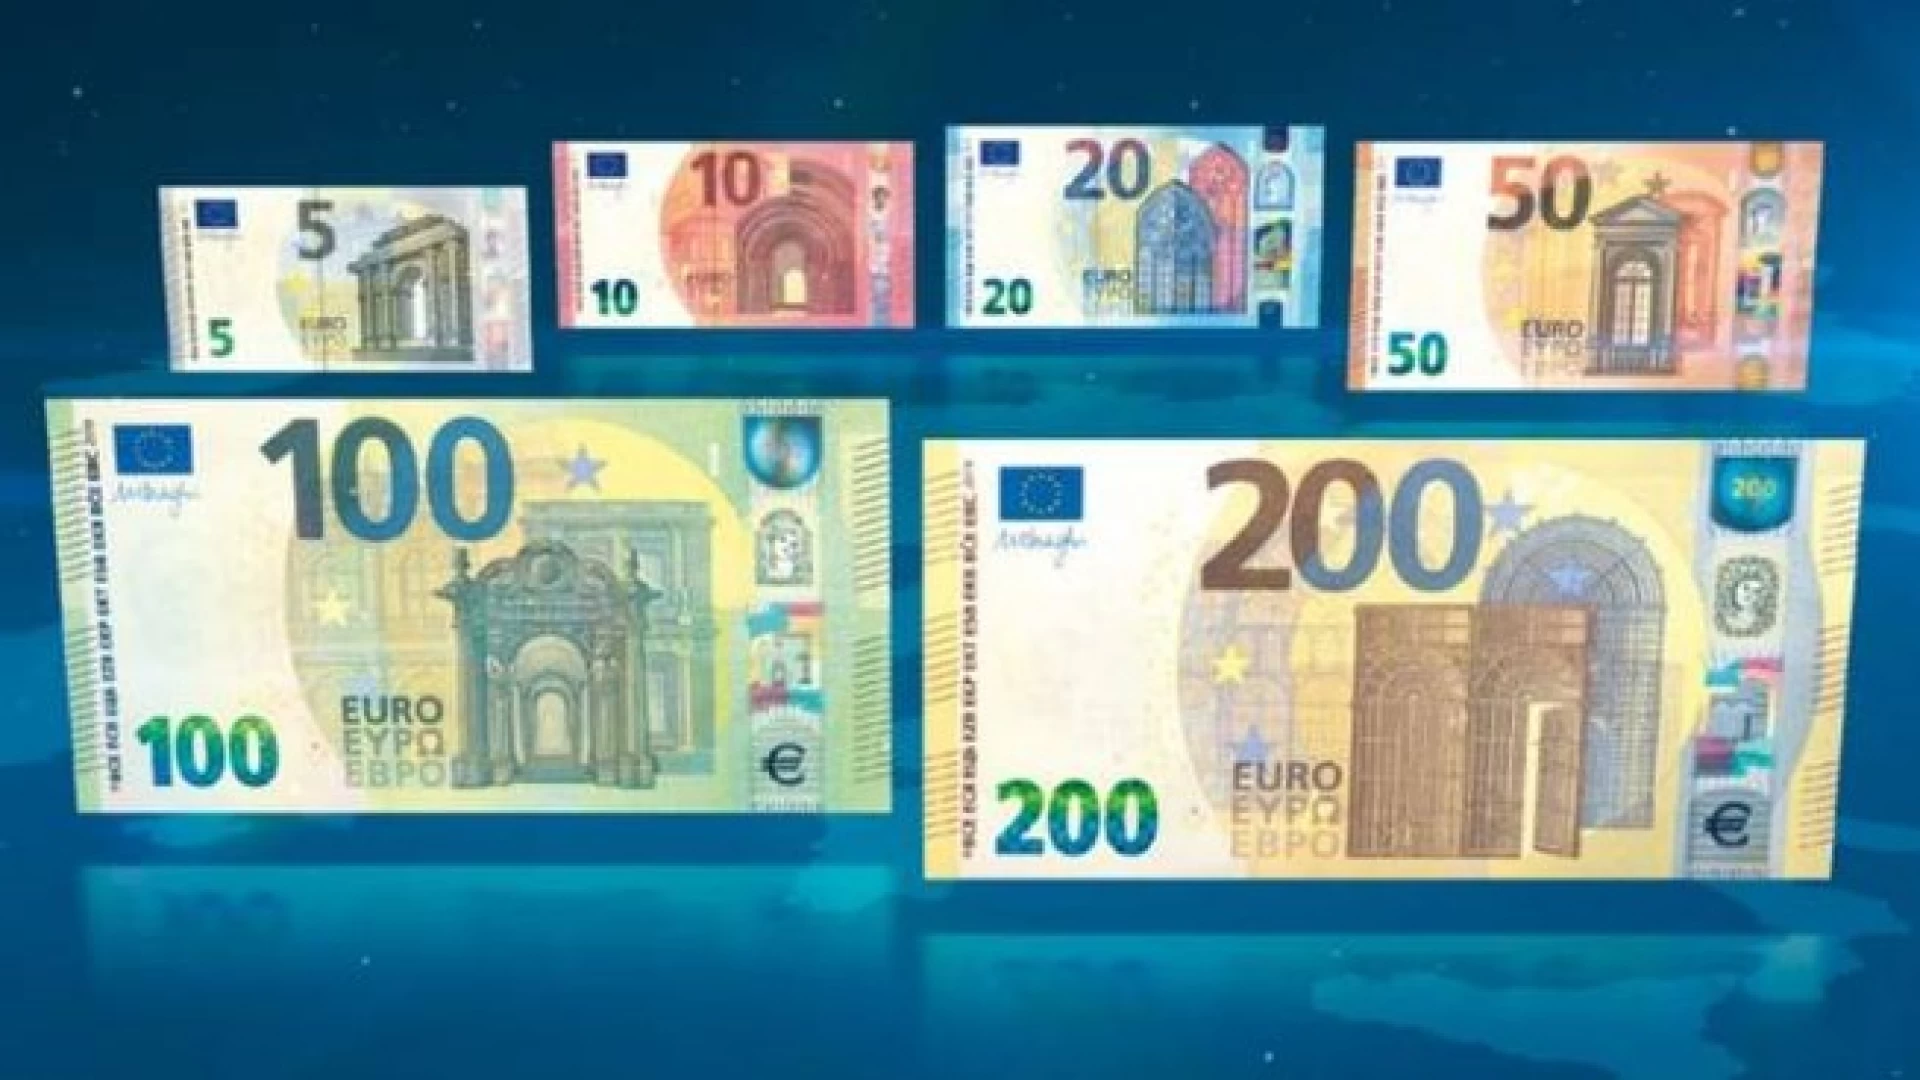 Presentazione delle nuove banconote da €100 e €200 “serie Europa”. L’evento presso la filiale della Banca d’Italia a Campobasso